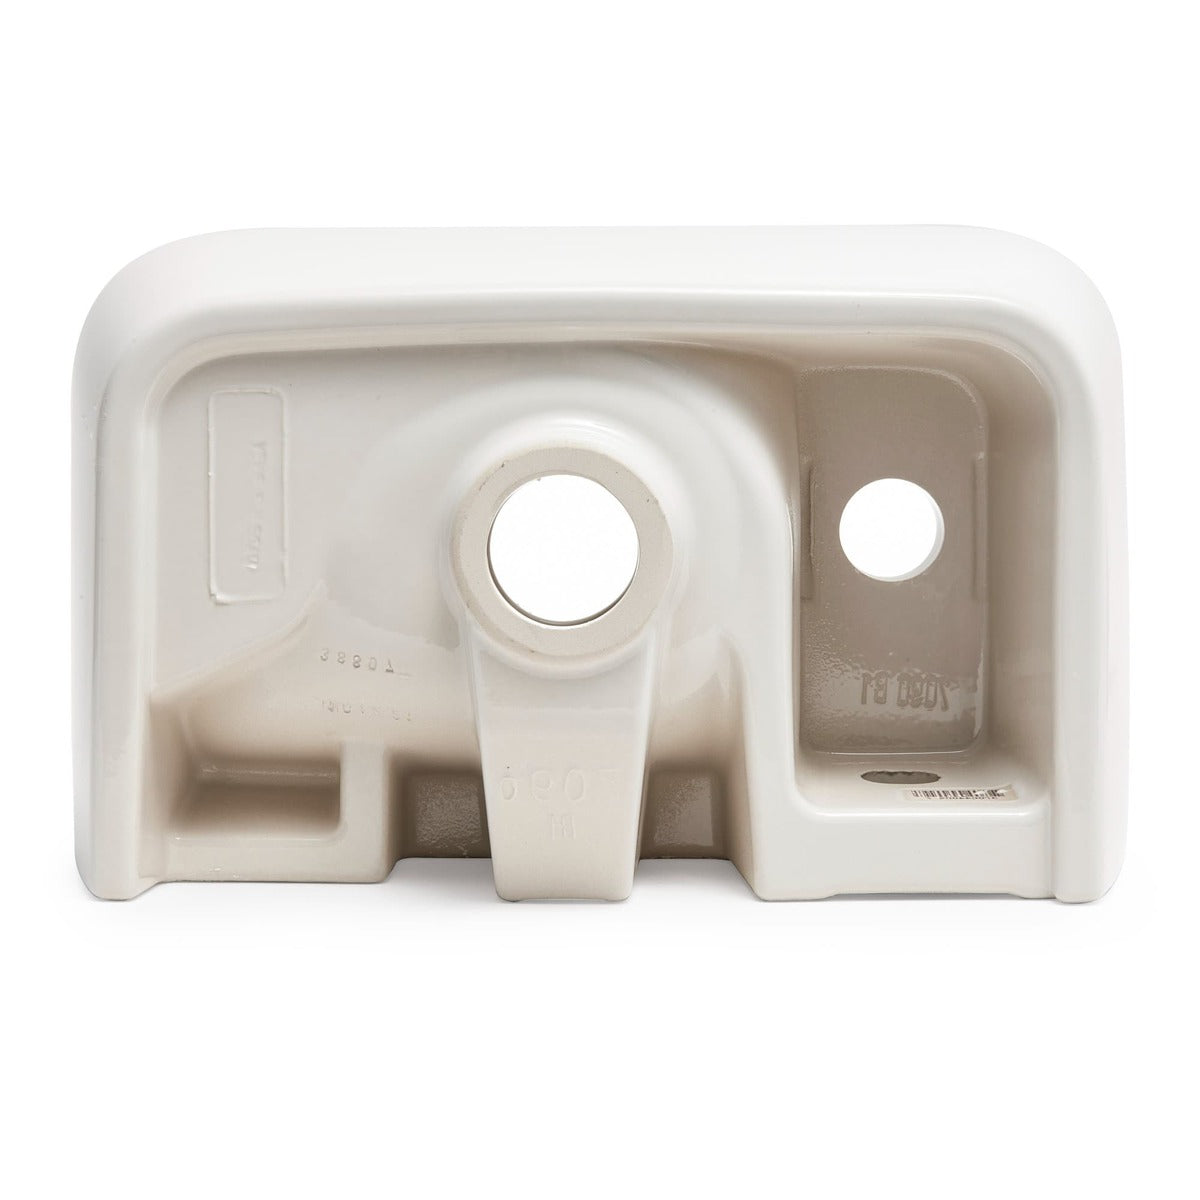 Umivalniki 7091-003-0029 Vitra Integra 37 x 22 cm desna izvedba keramični umivalnik z odprtino za armaturo | KOPALNICA-ONLINE.SI